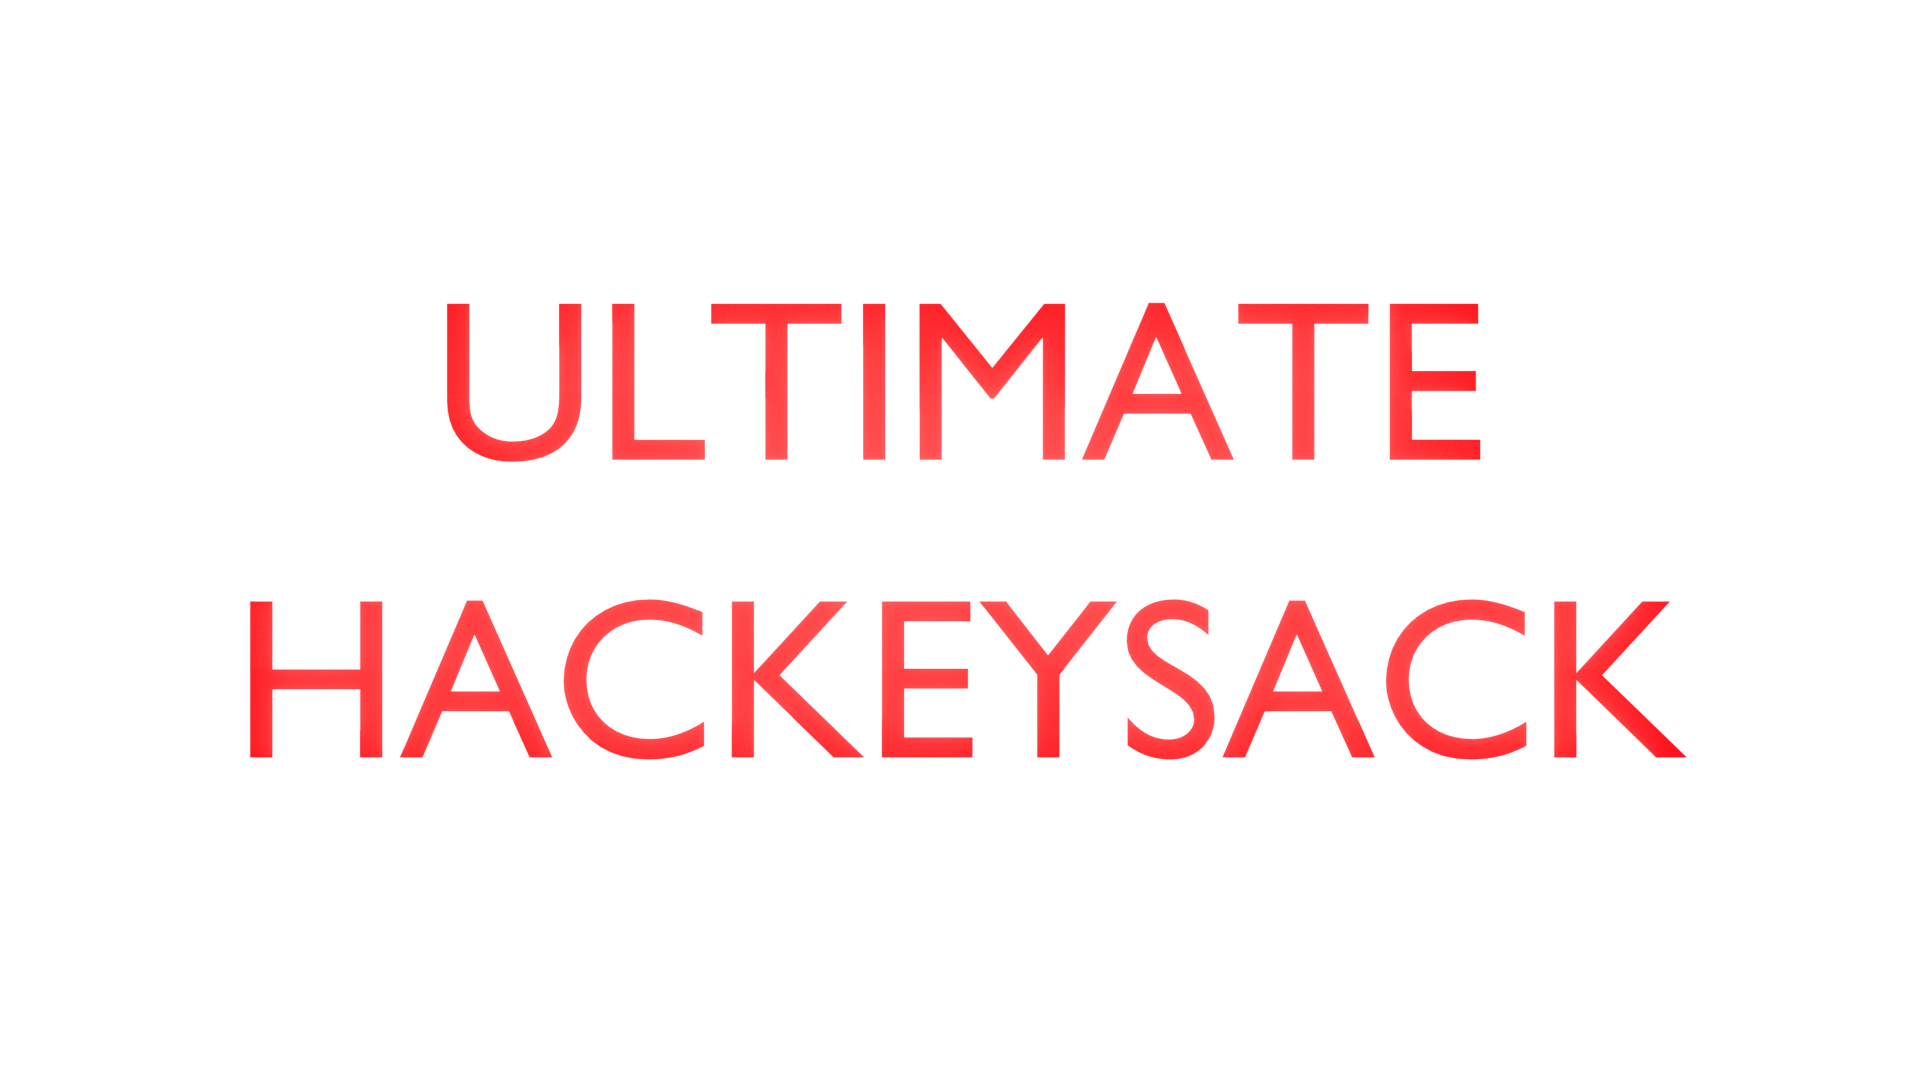 ULTIMATE HACKEYSACK